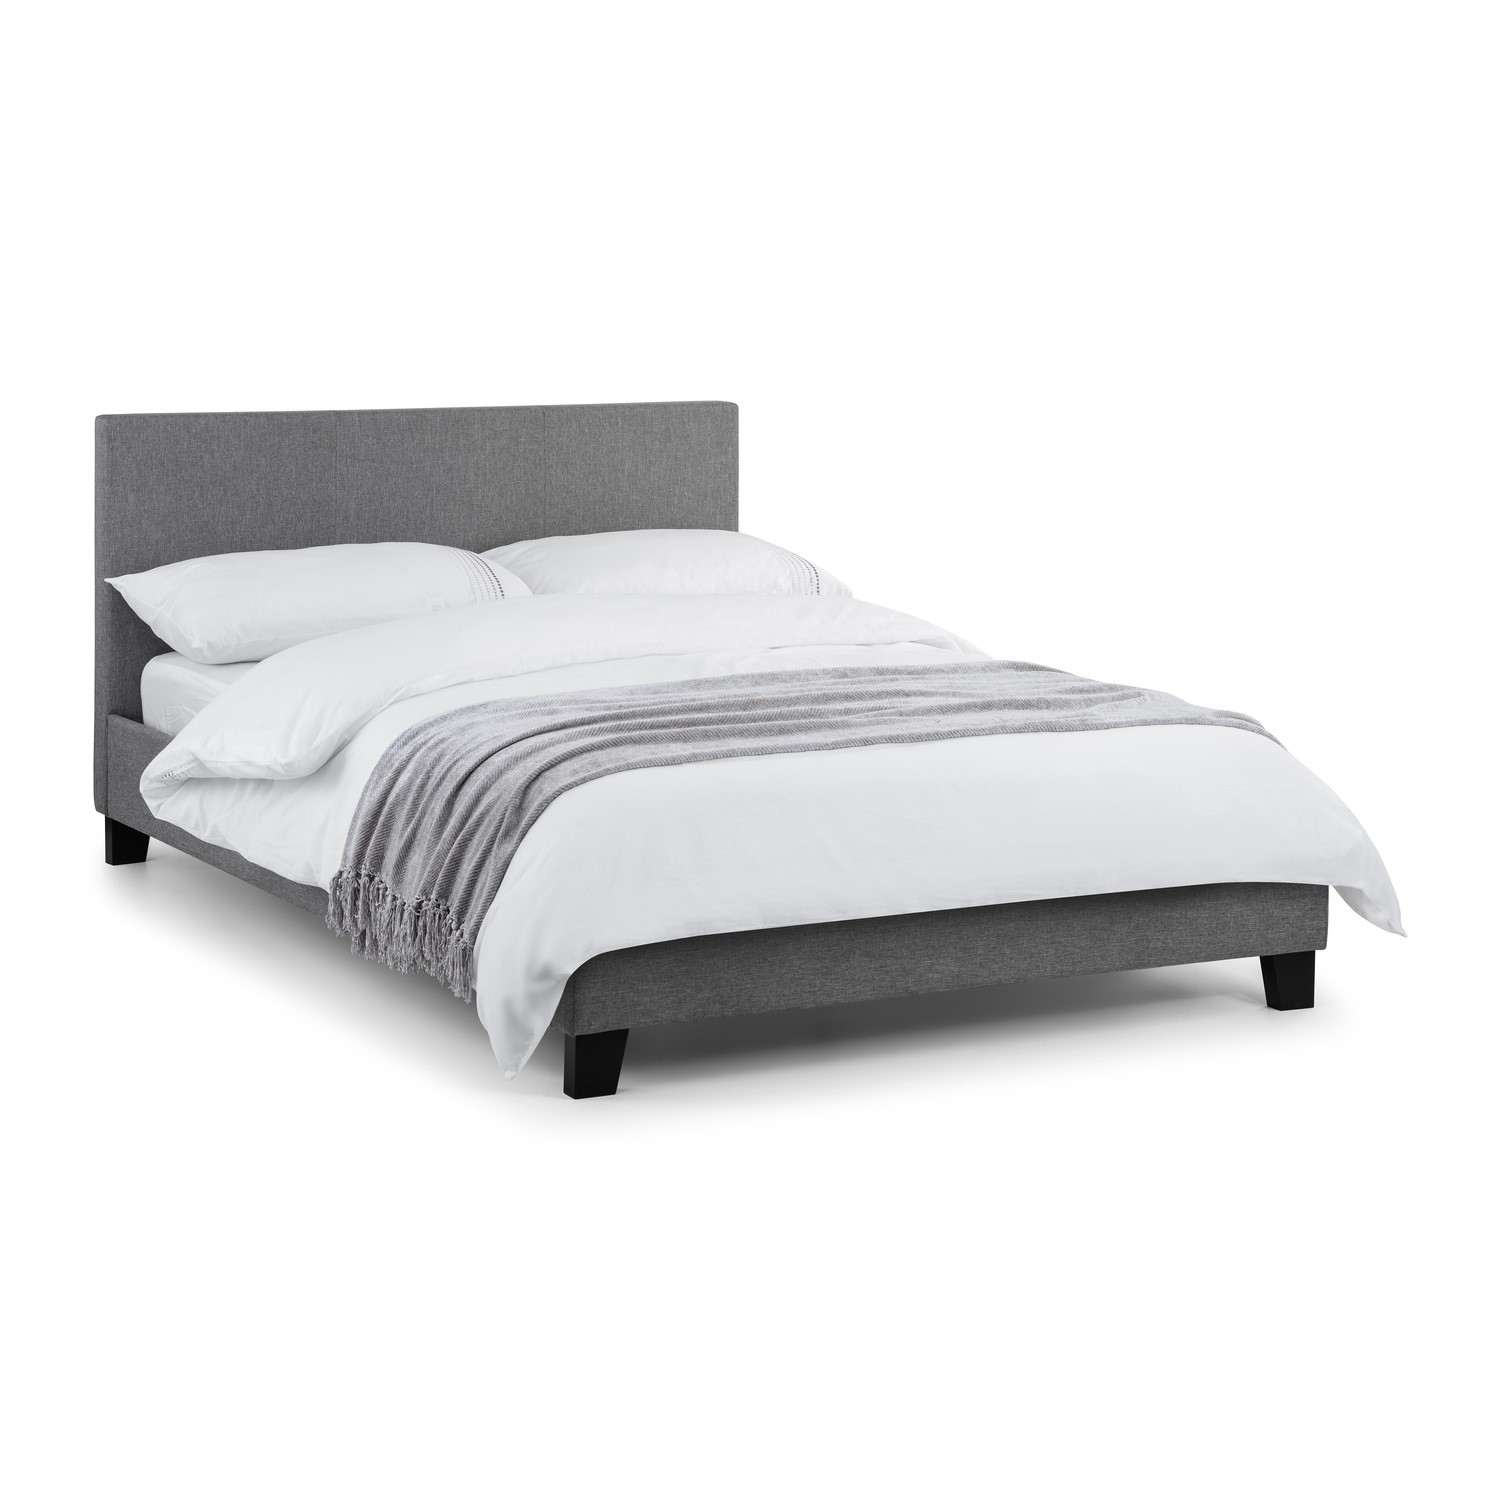 Photo of Grey linen double bed frame - rialto - julian bowen